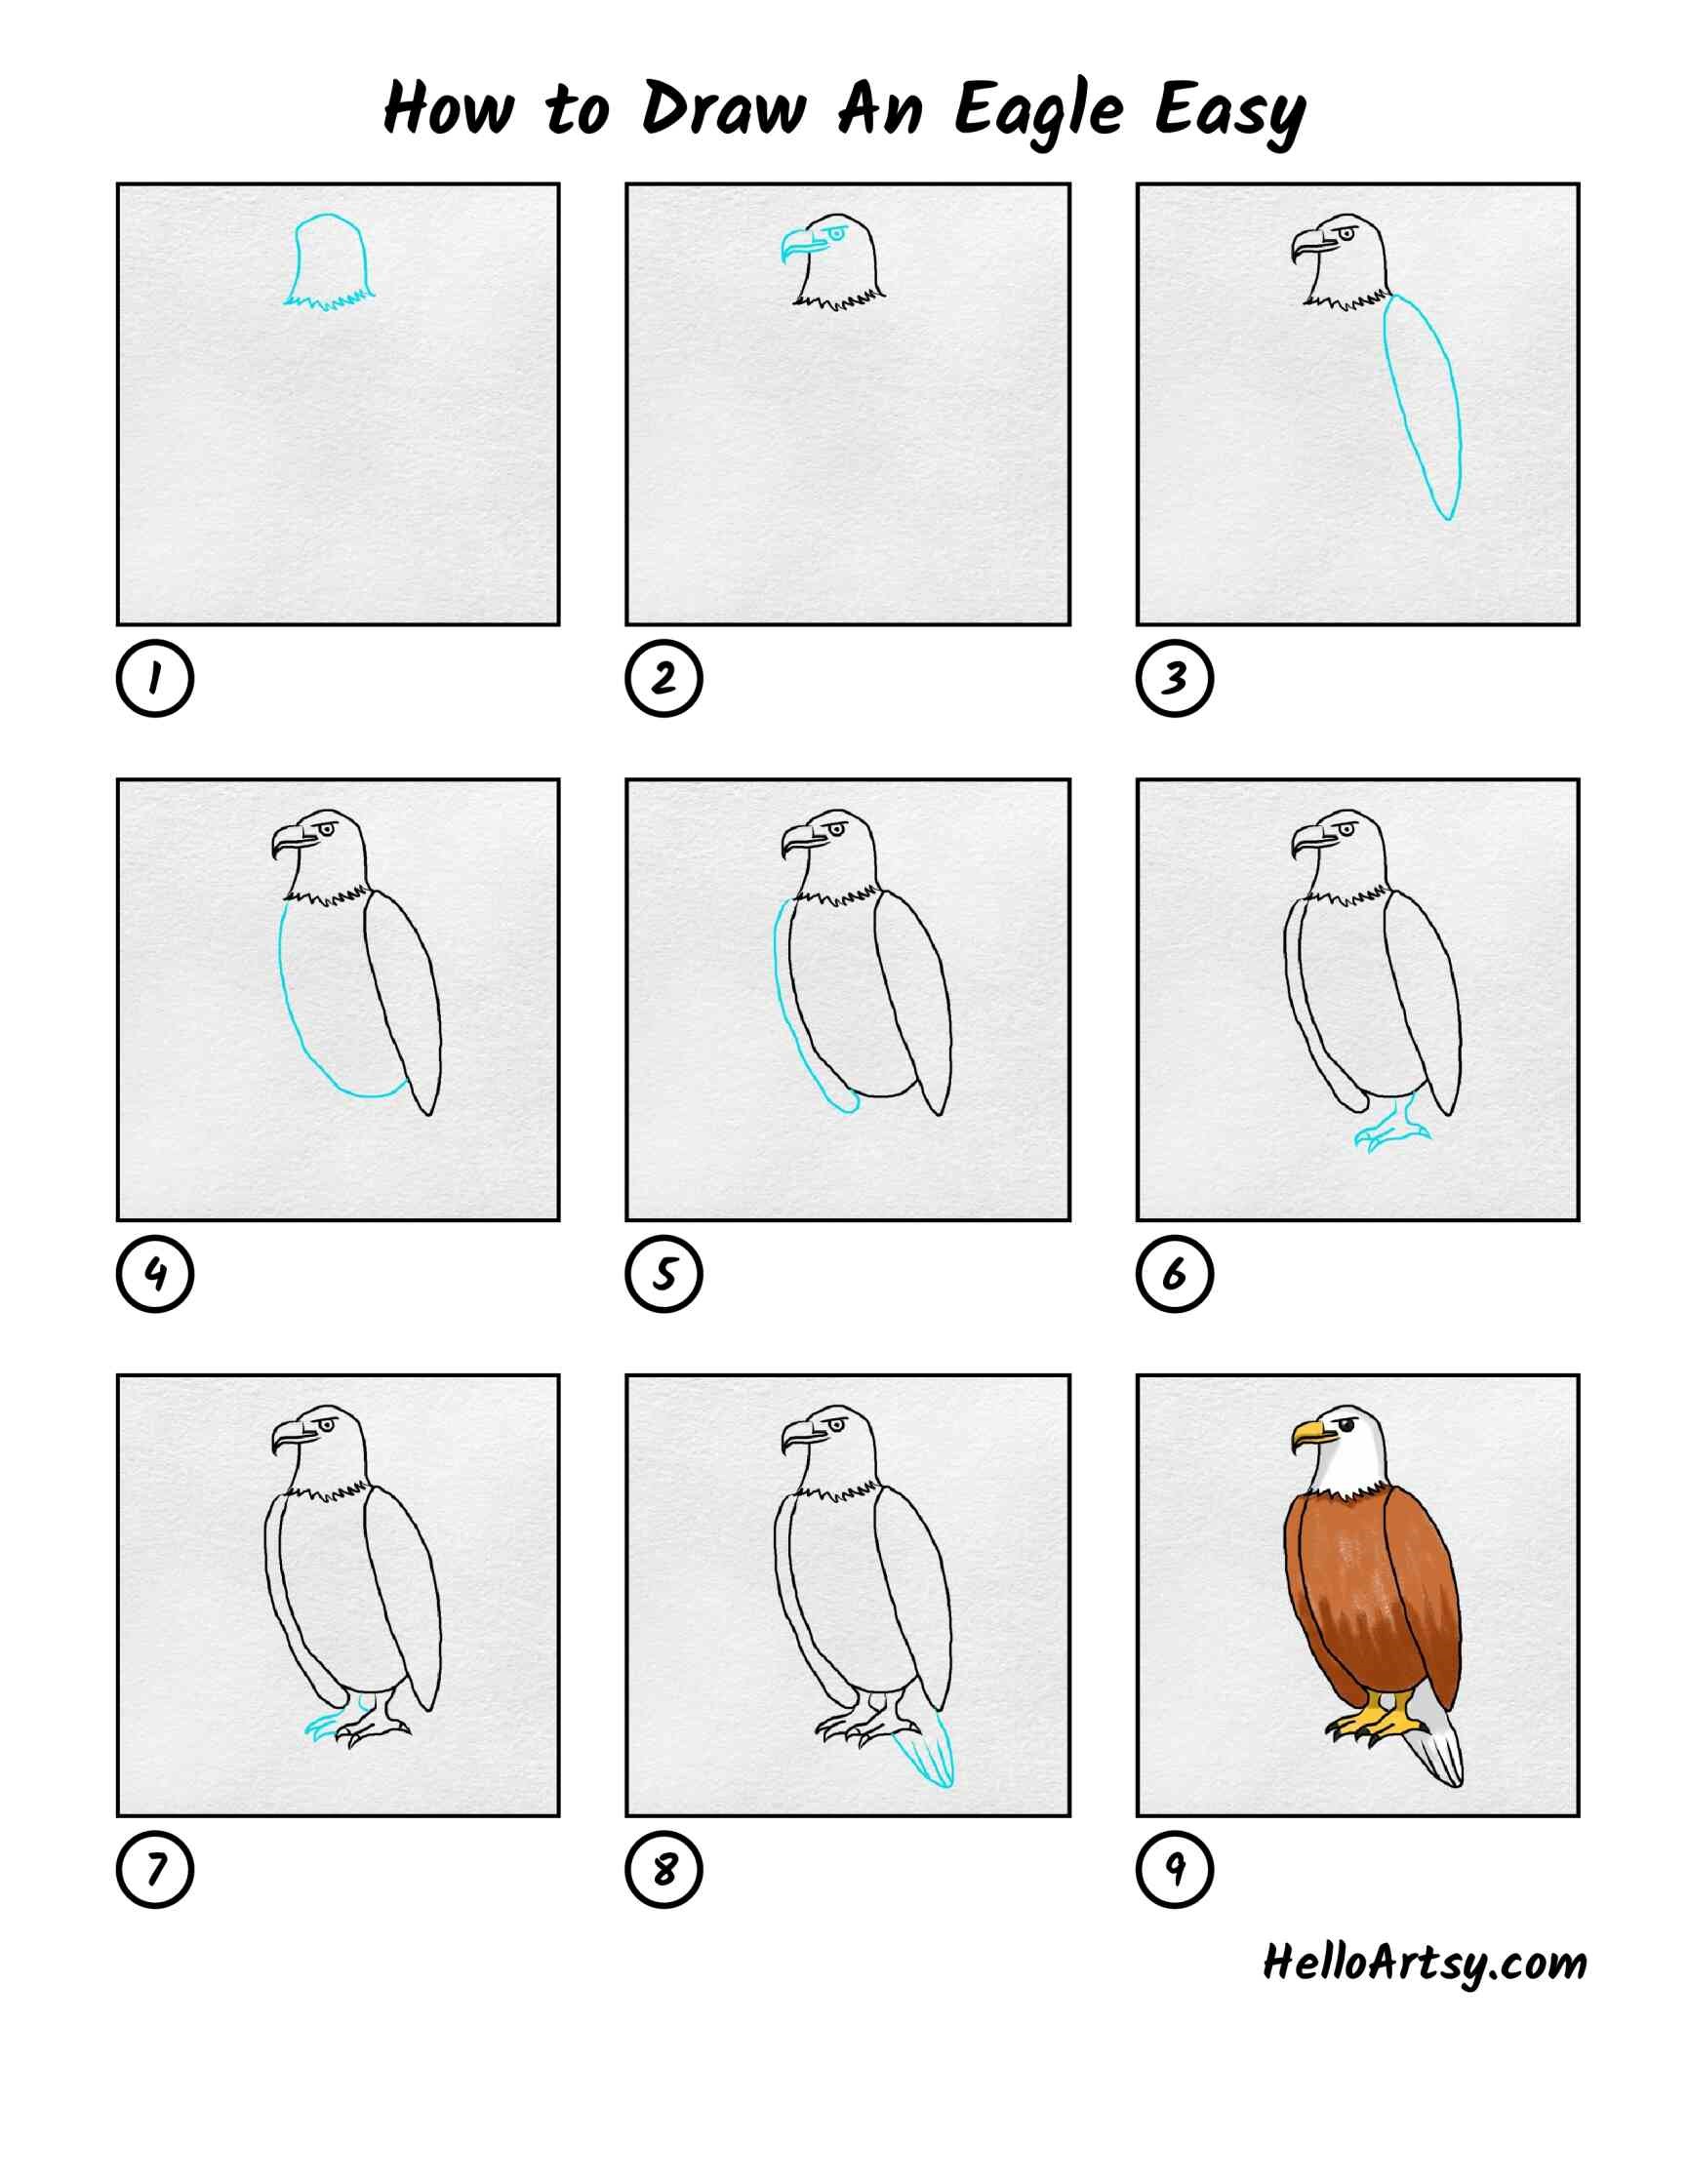 Eagle-Idee 3 zeichnen ideen